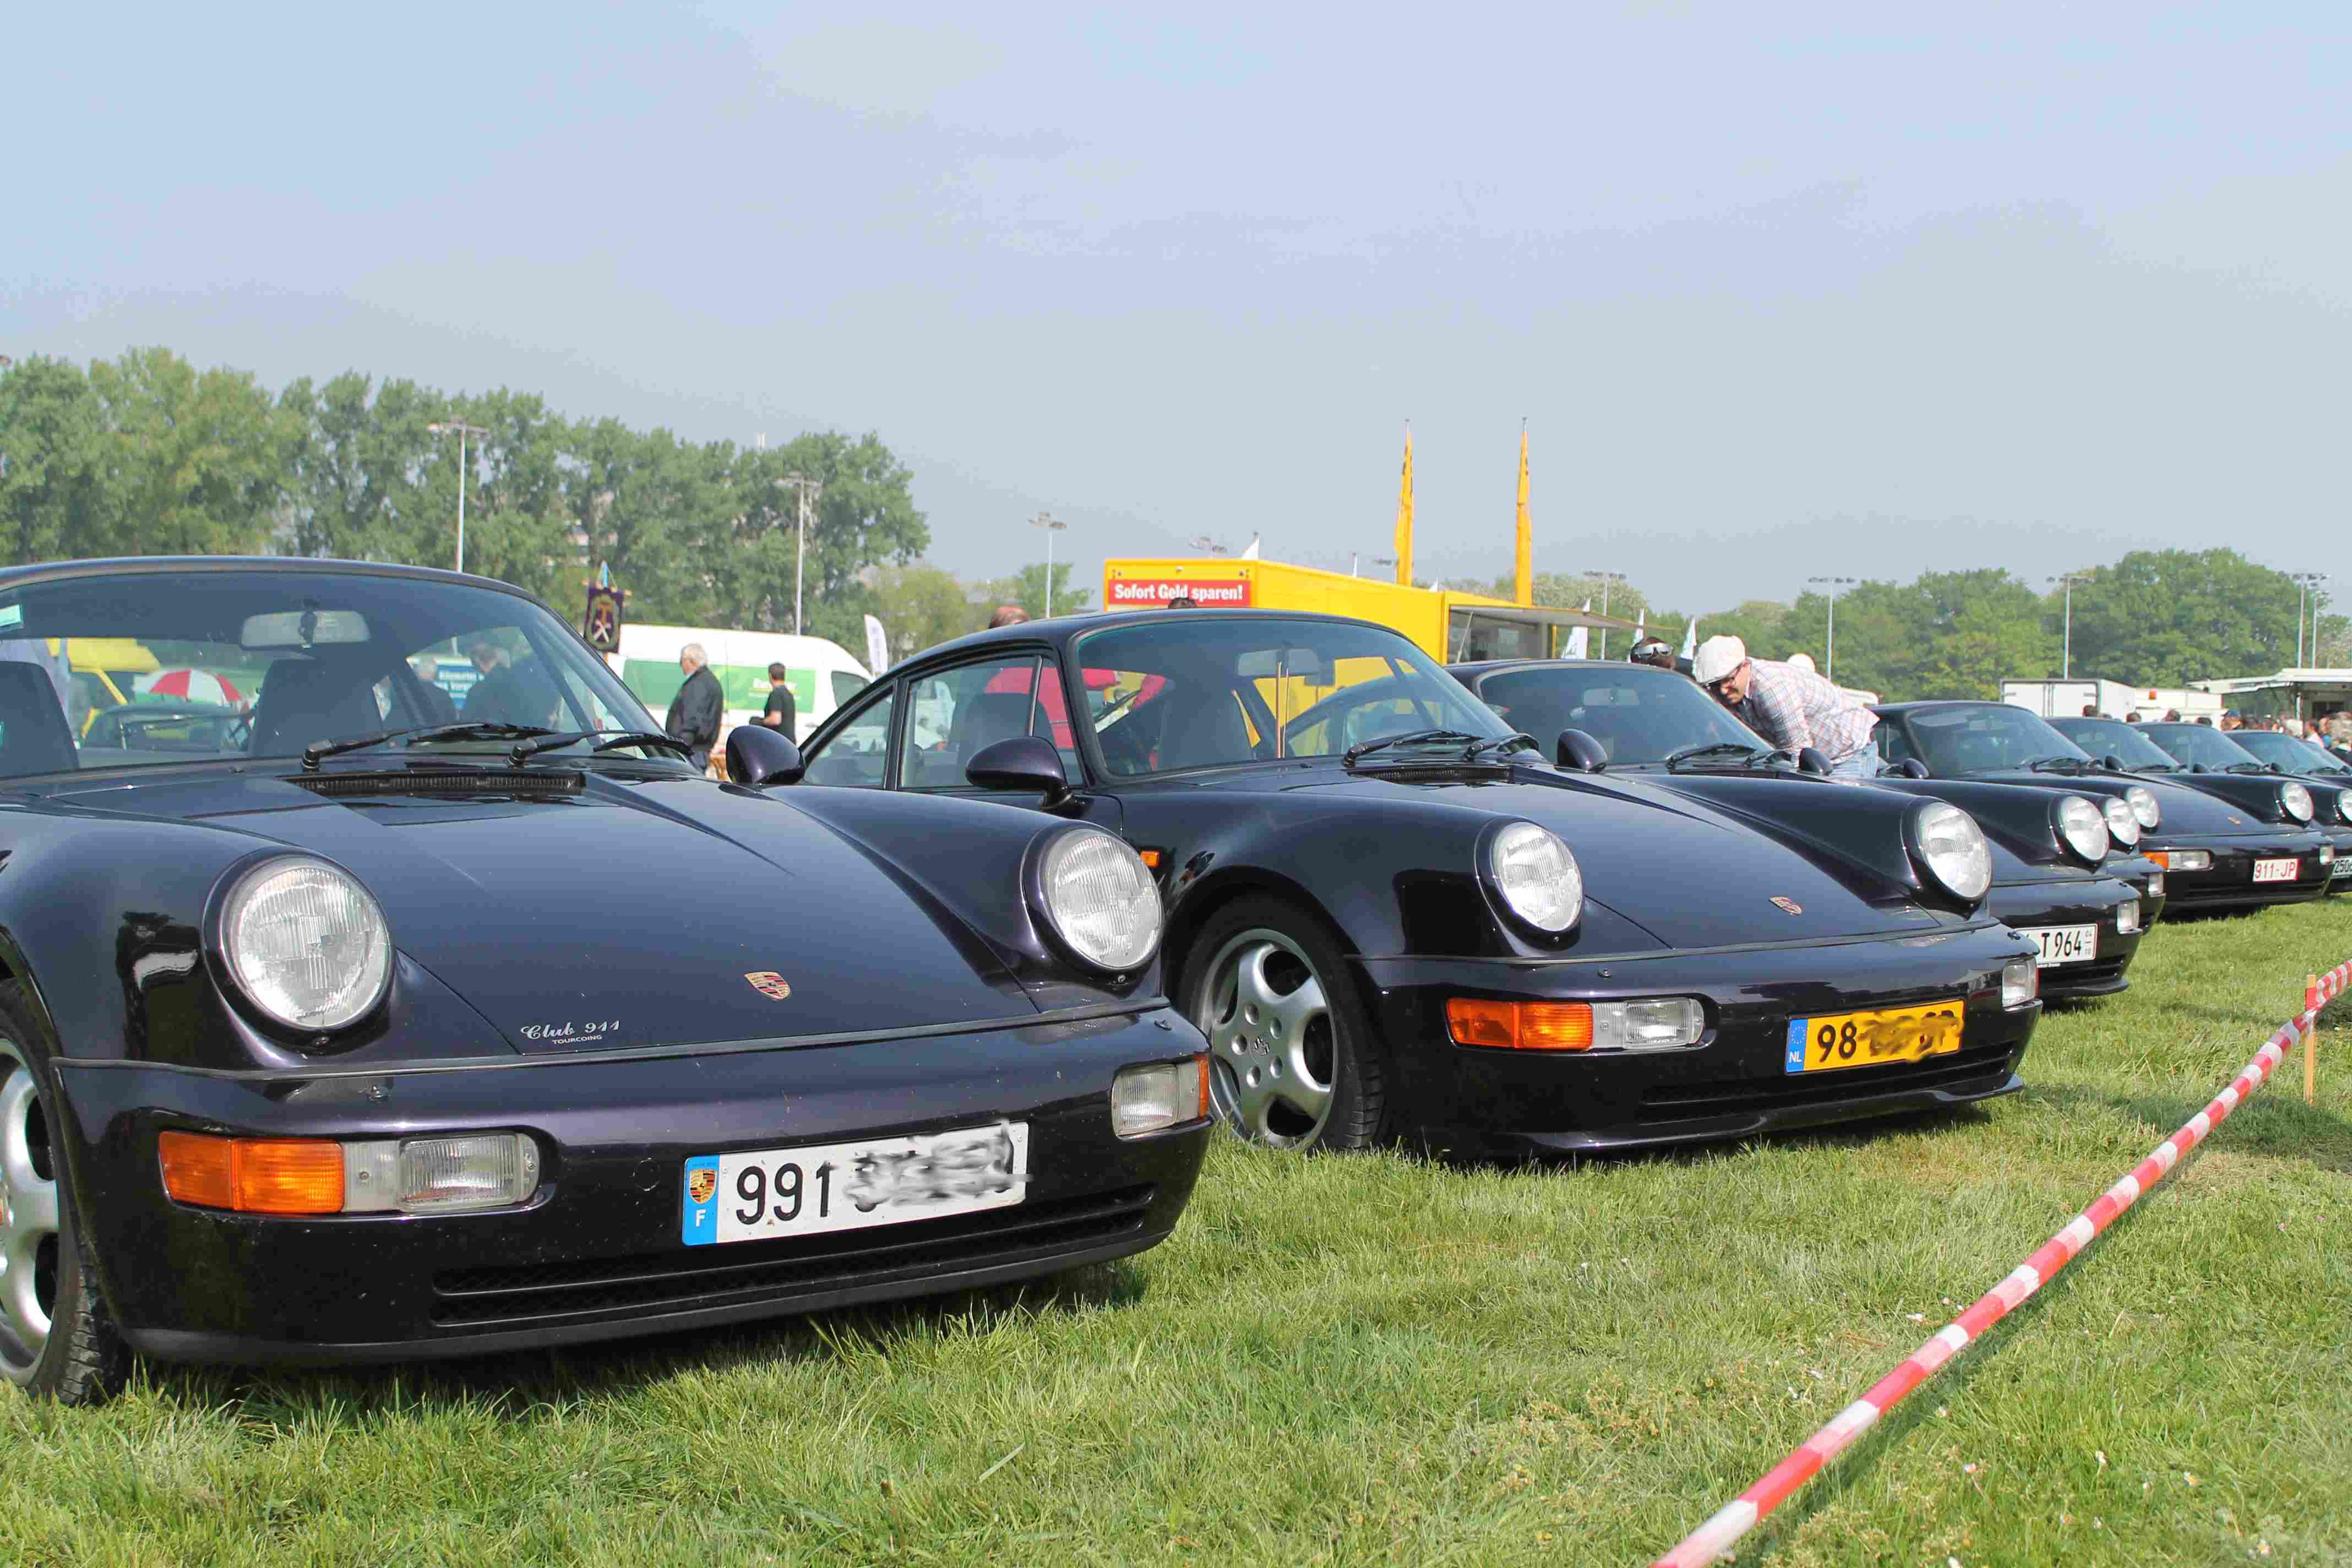 internationales felling auf dem Porsche Treffen in Dinslaken 2014